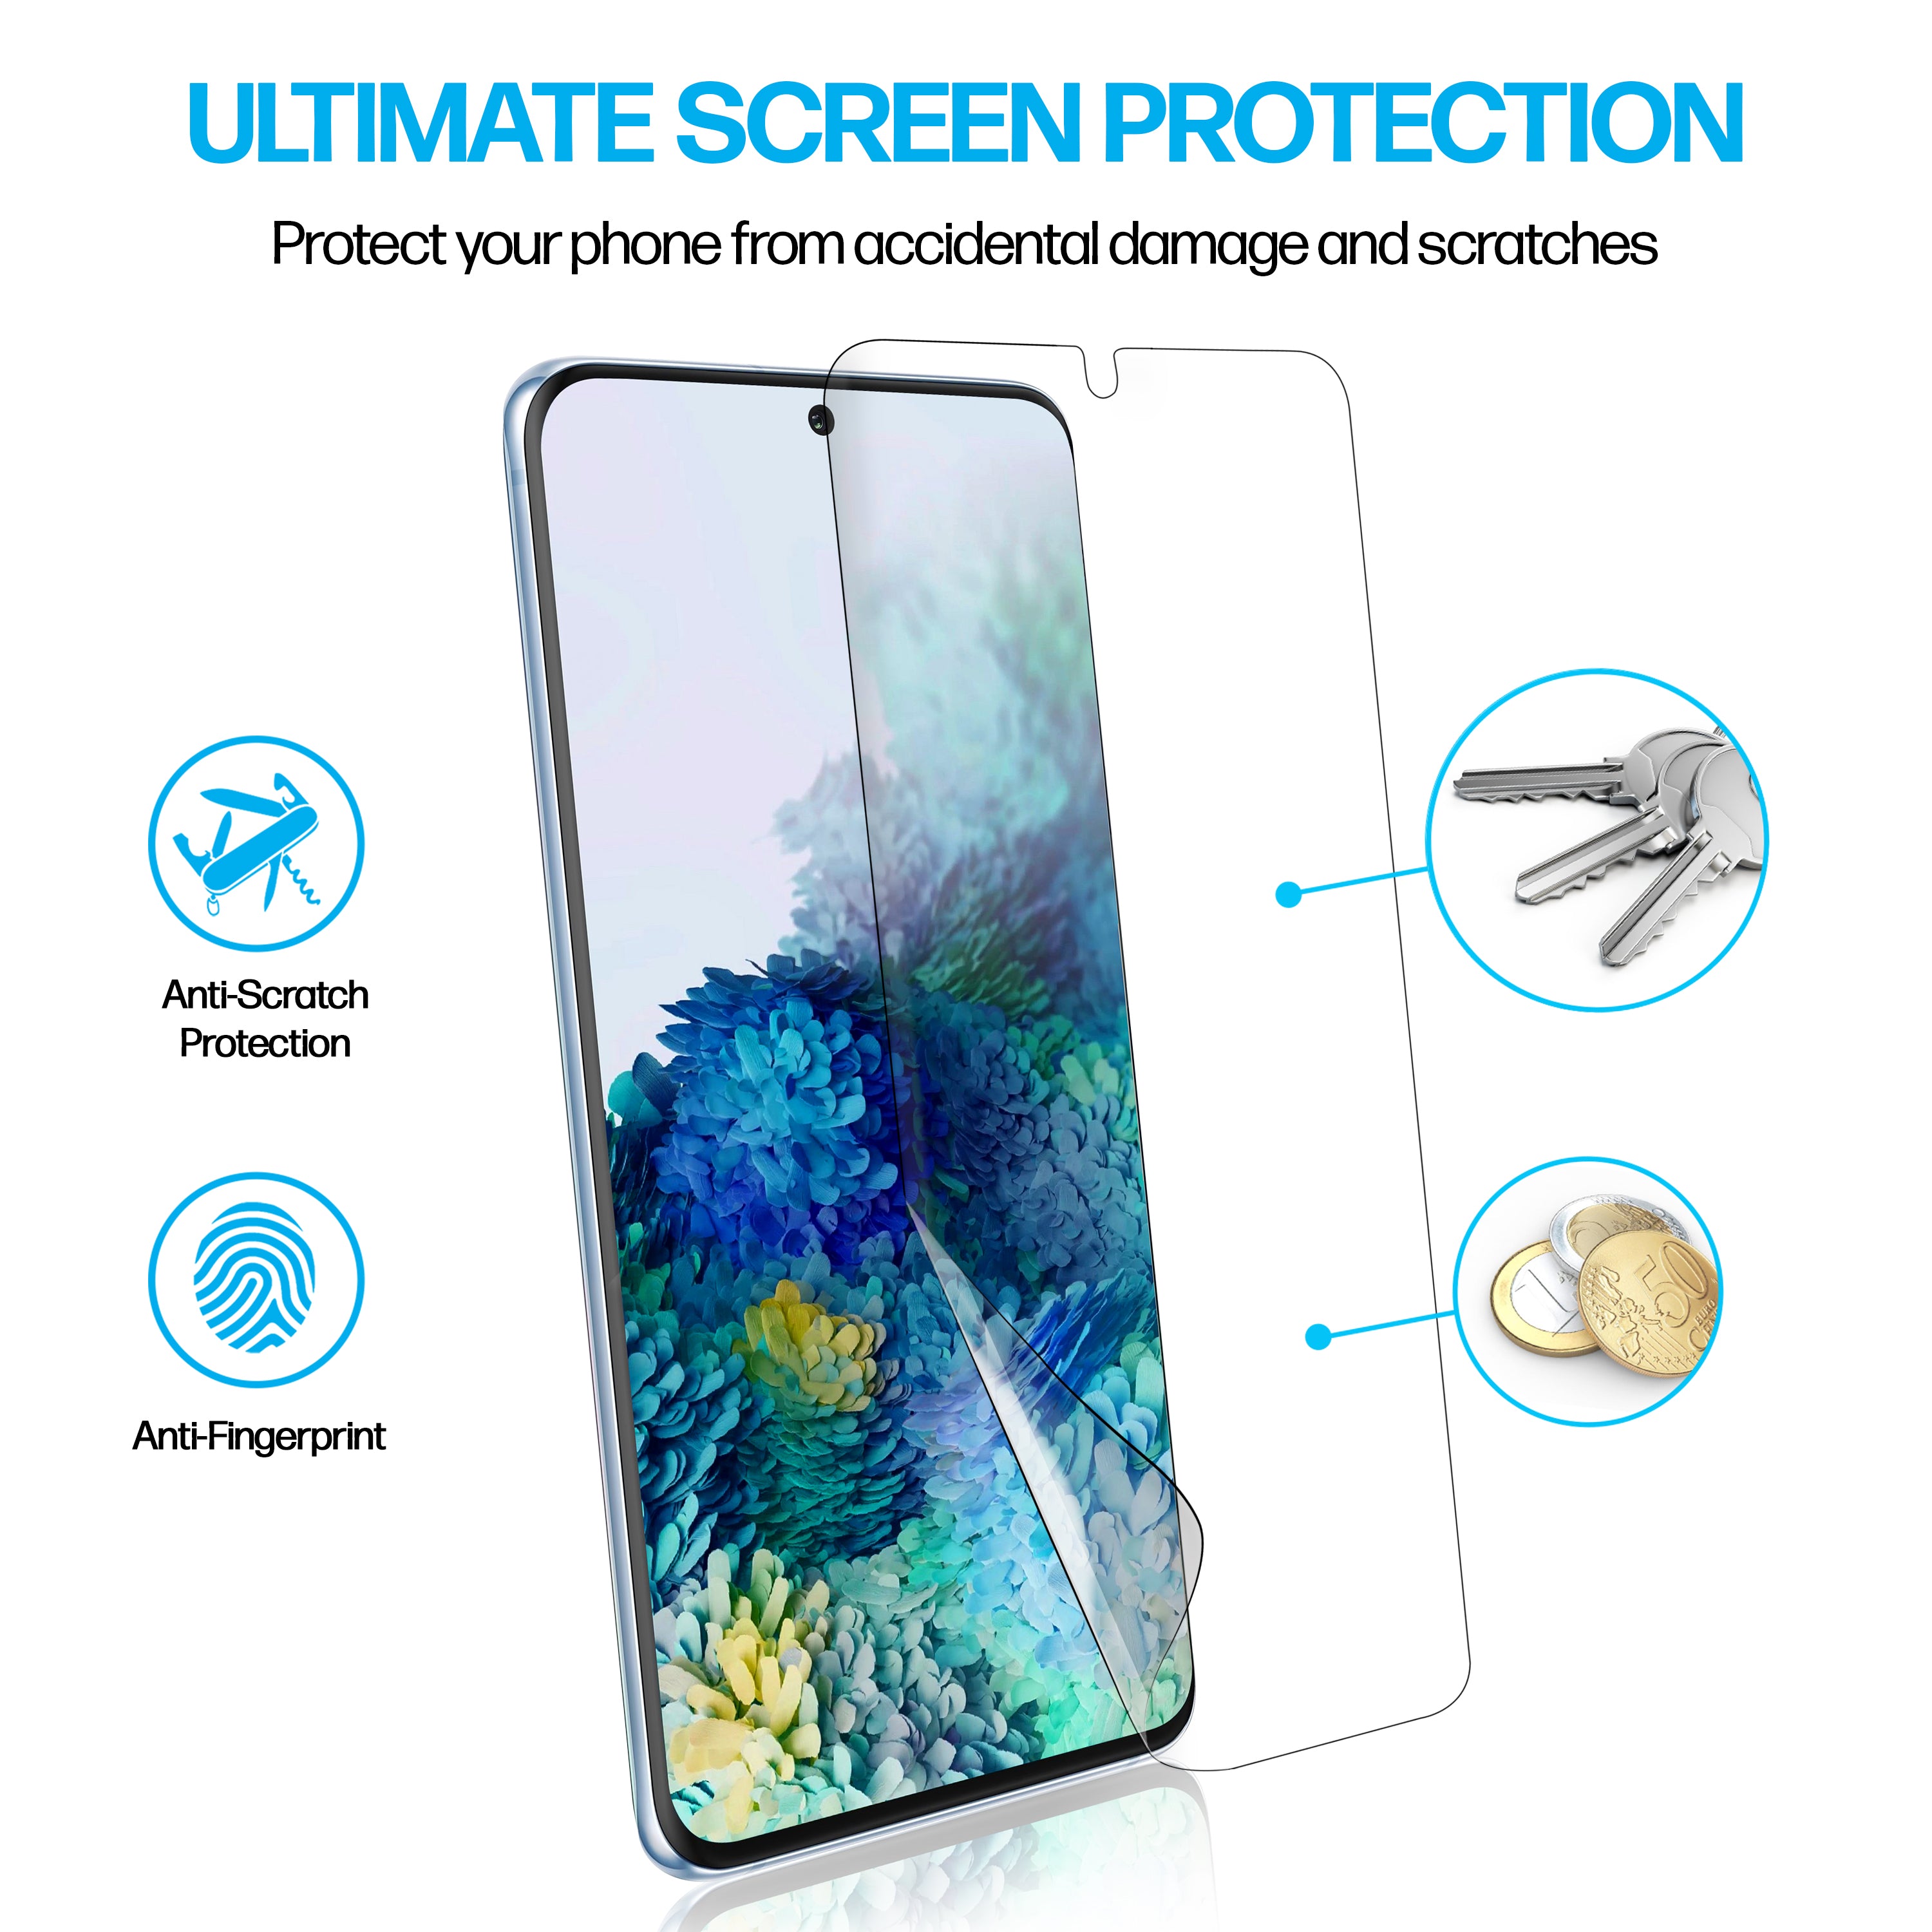 Samsung Galaxy S20 Plus TPU Anti-Scratch Screen Protector Film [2-Pack]